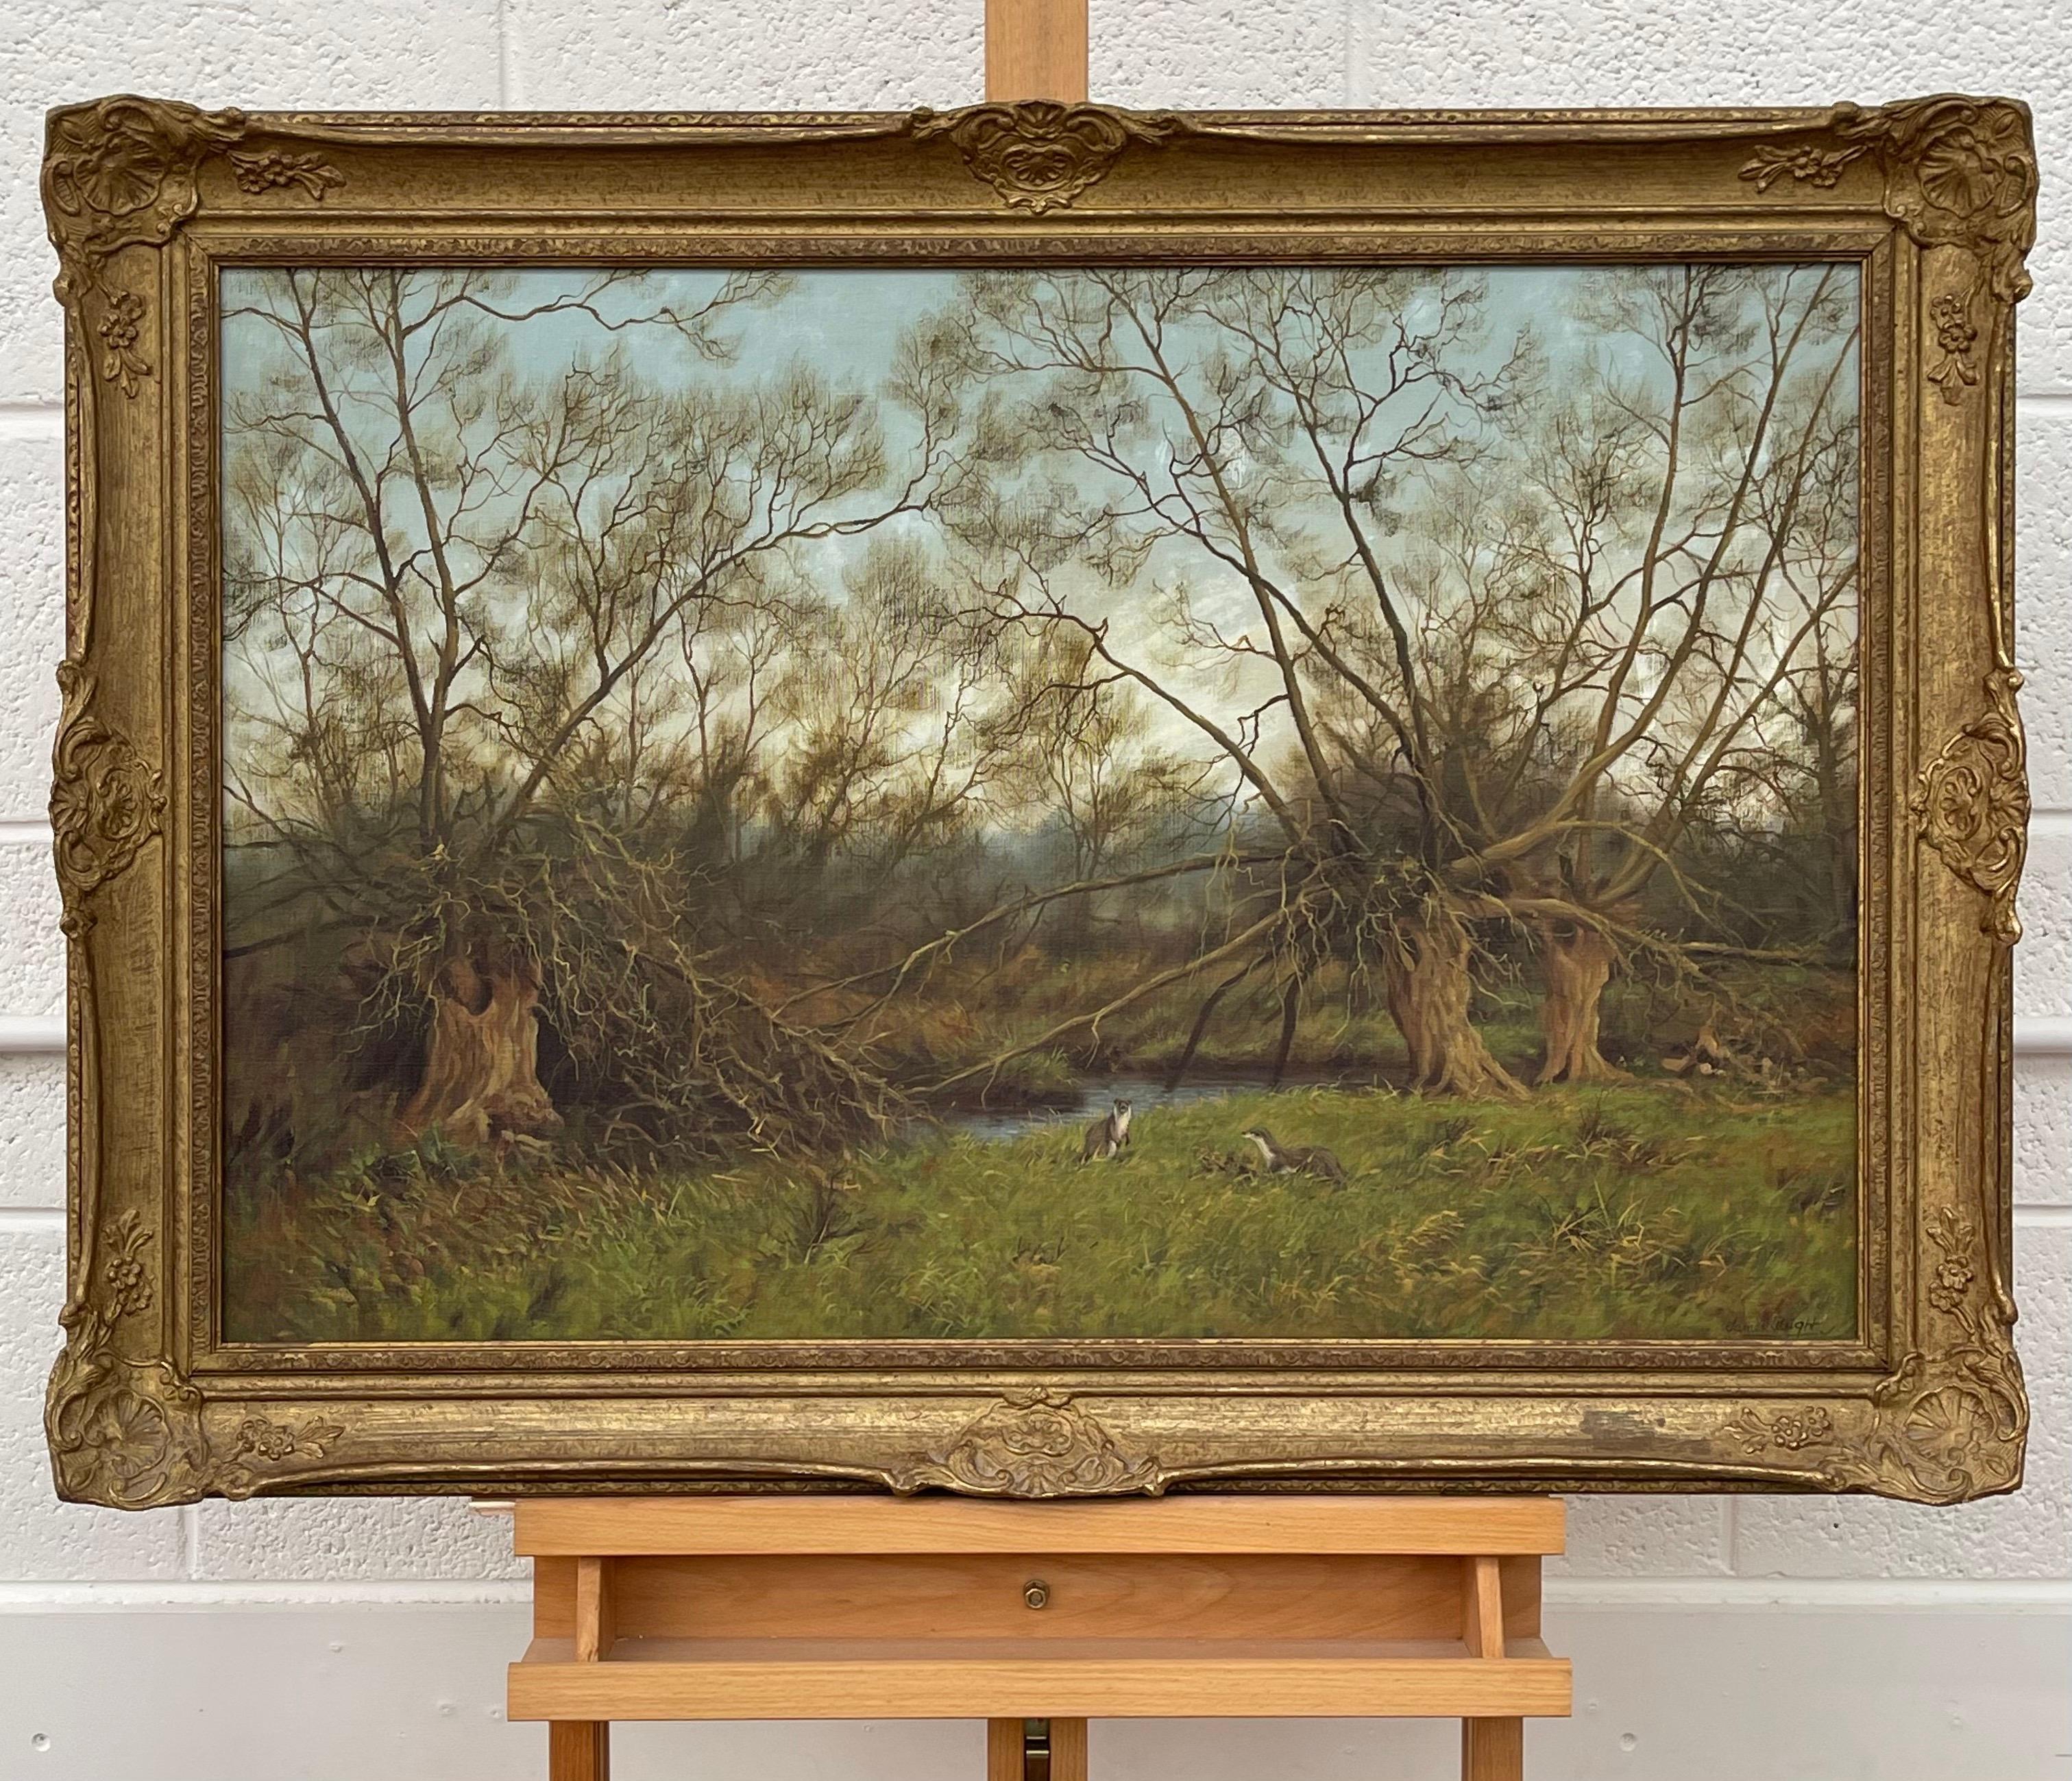 Gemälde der englischen Landschaft mit Flussottern von Modern British artist (Realismus), Painting, von James Wright